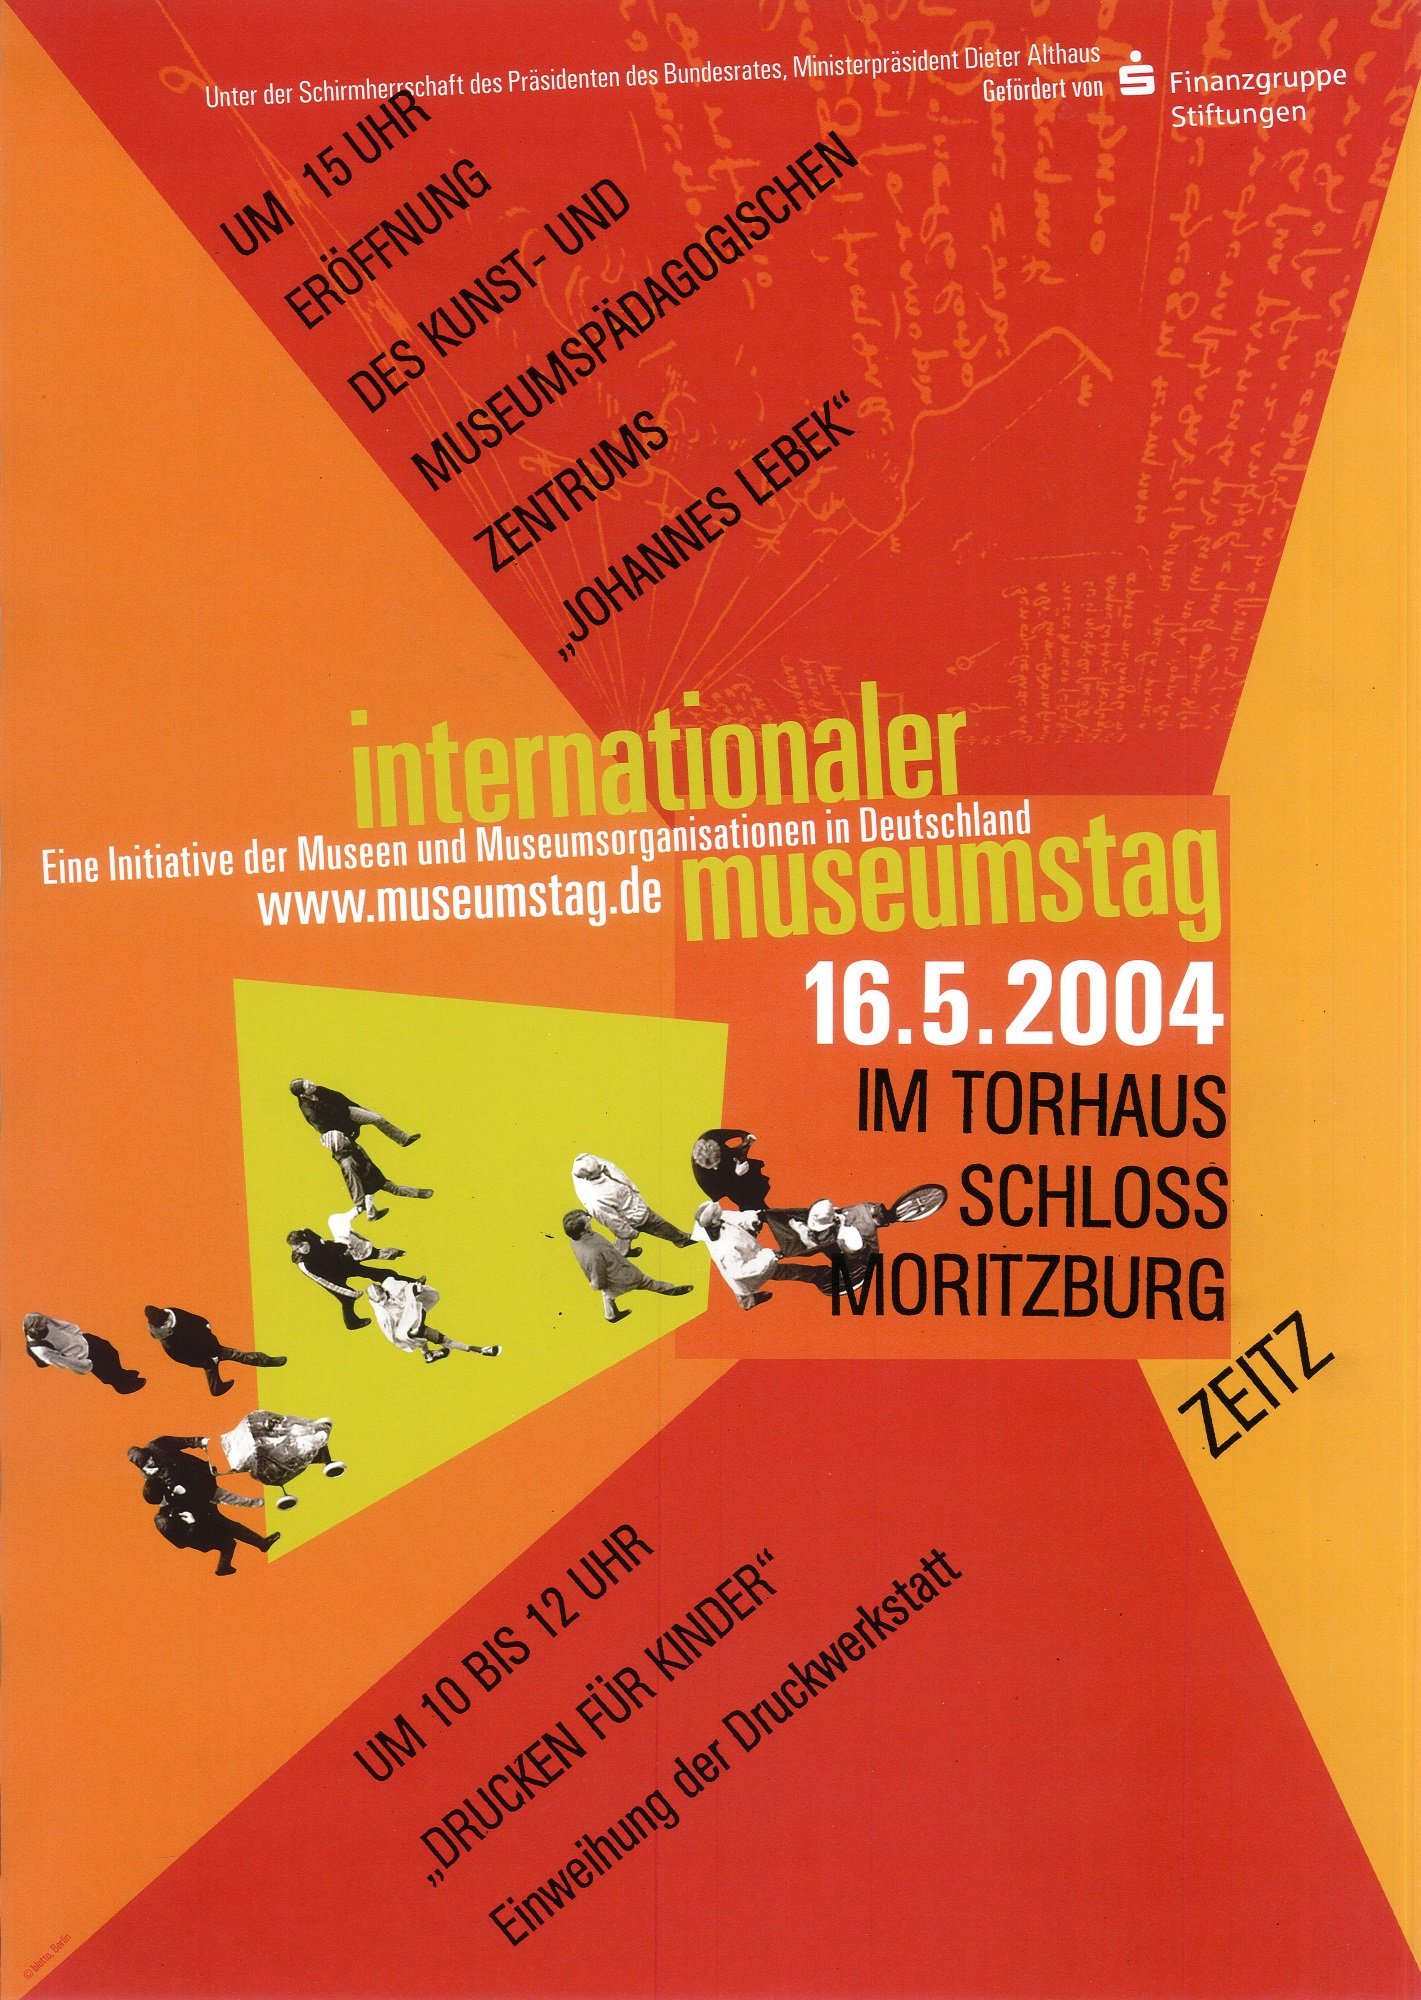 Plakat "Internationaler Museumstag" (Museum Schloss Moritzburg Zeitz RR-R)